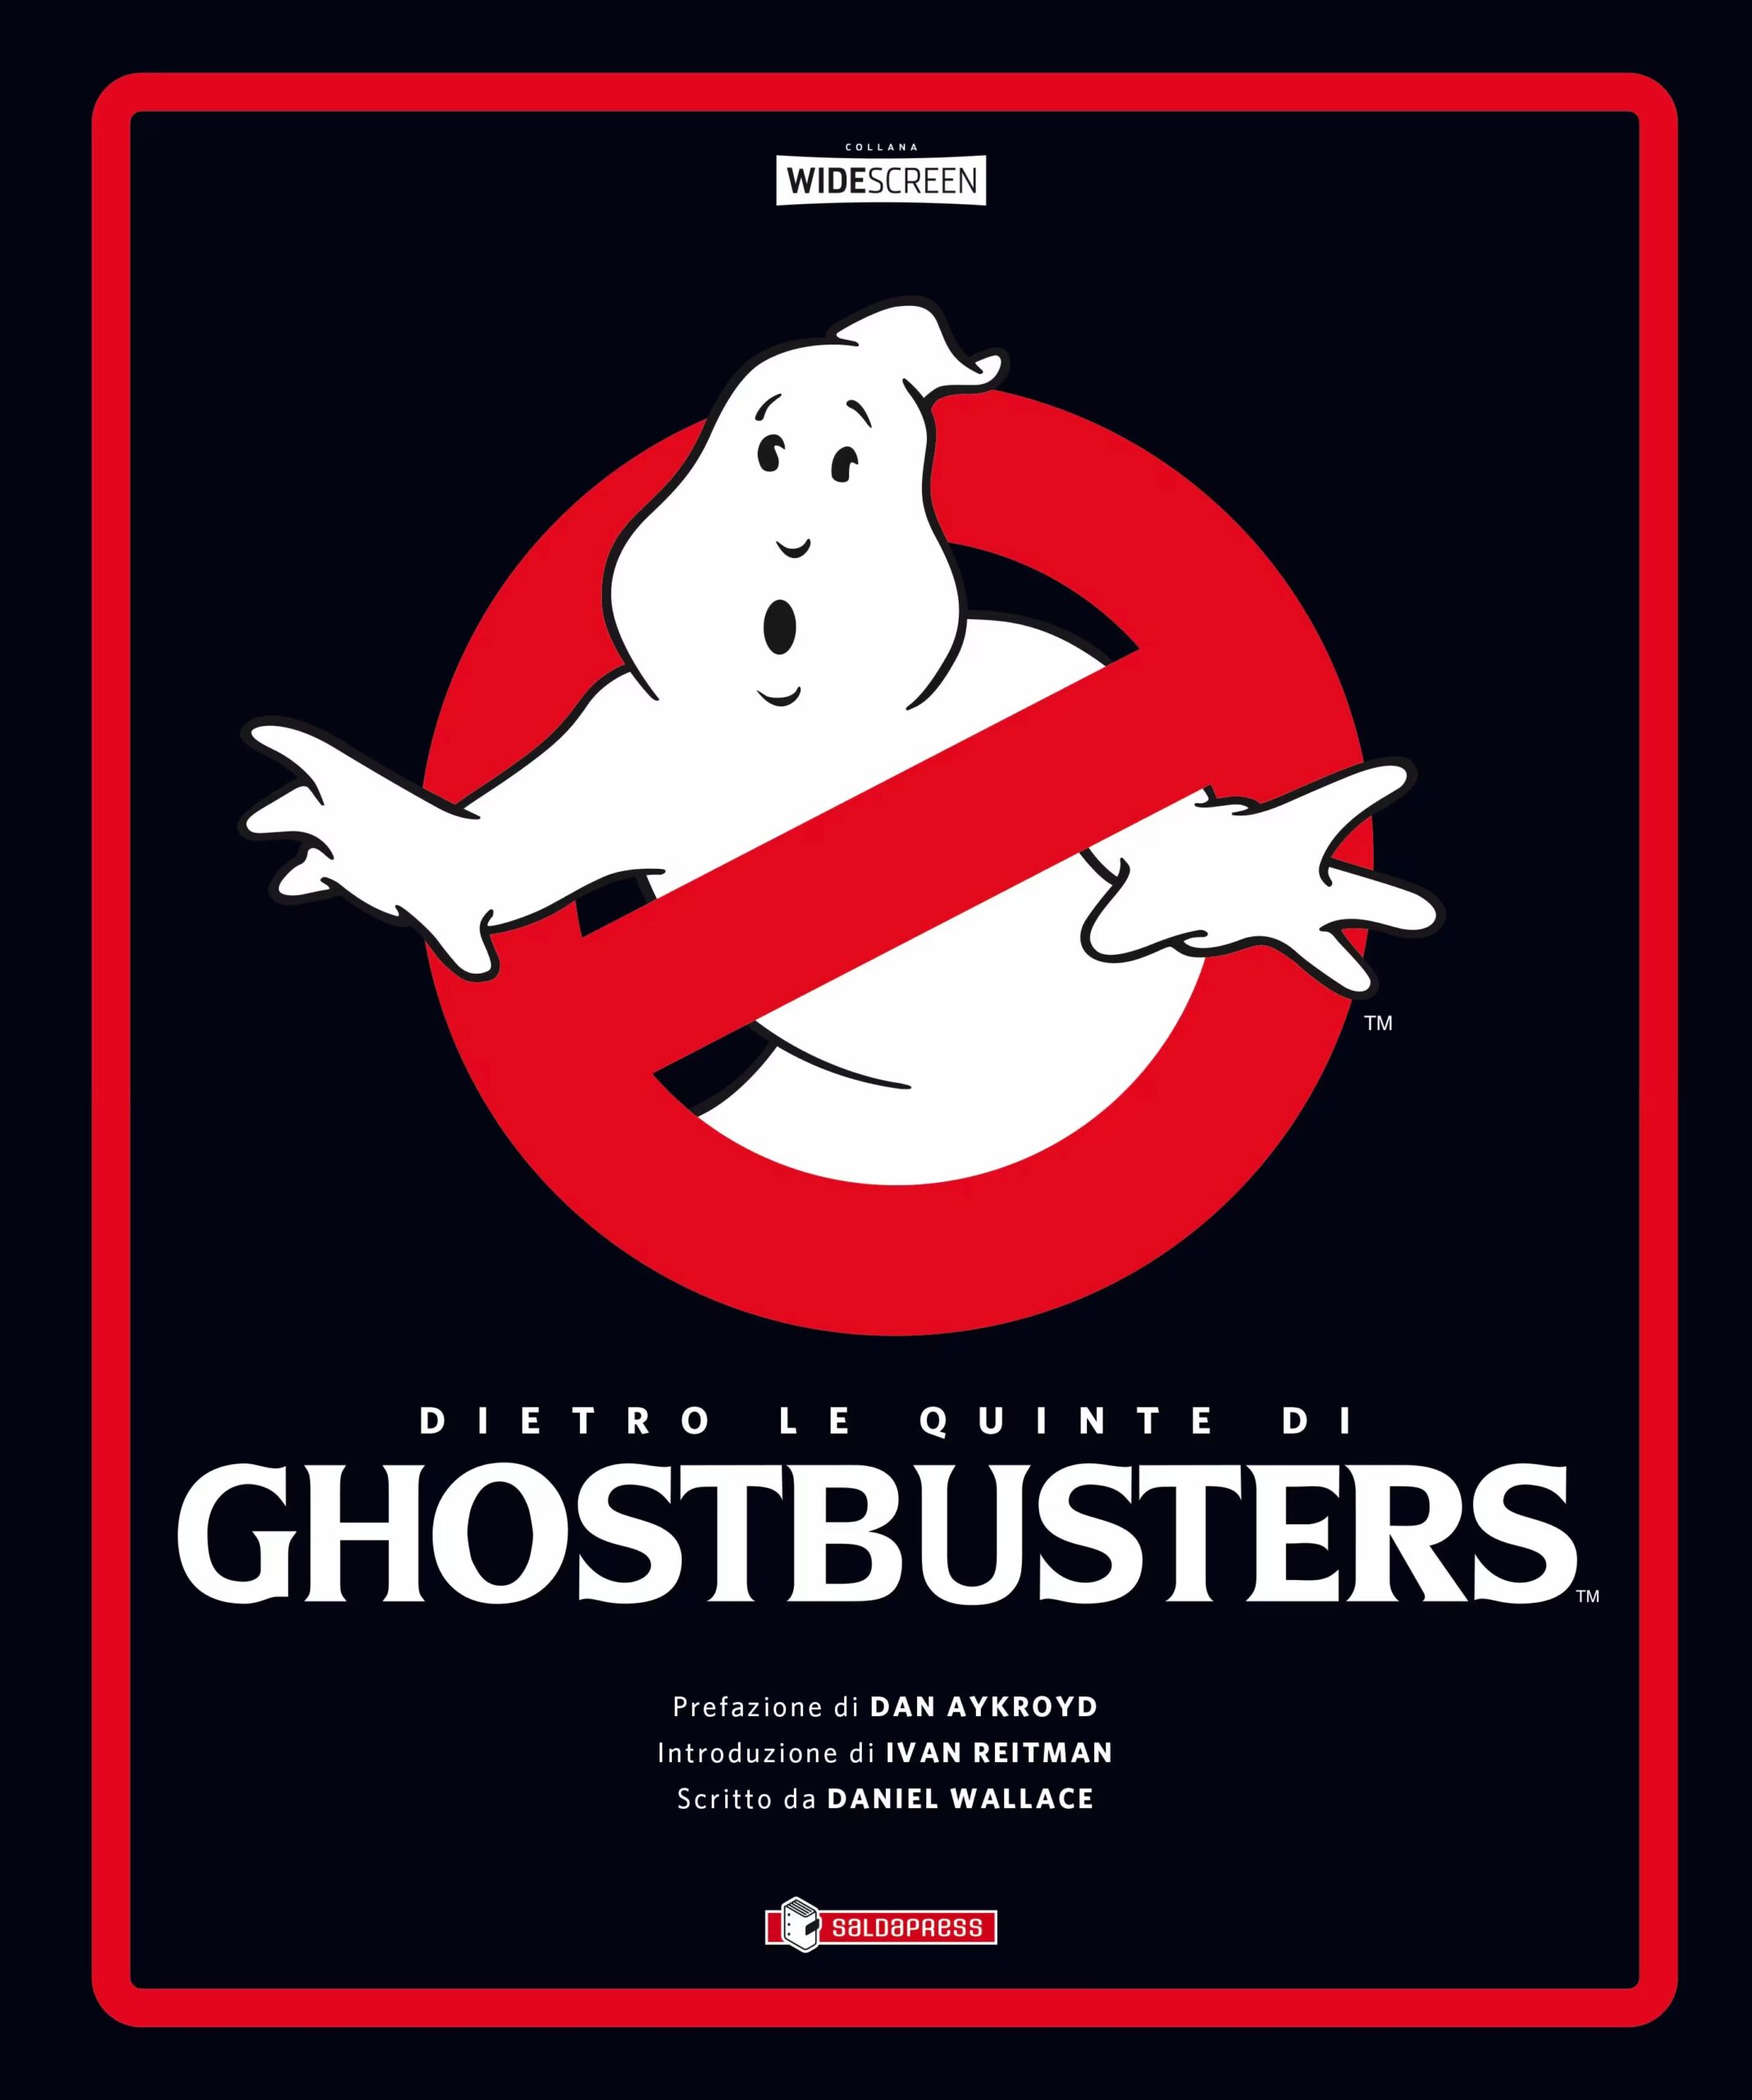 Ghostbusters: un tuffo dietro le quinte con il libro di Daniel Wallace